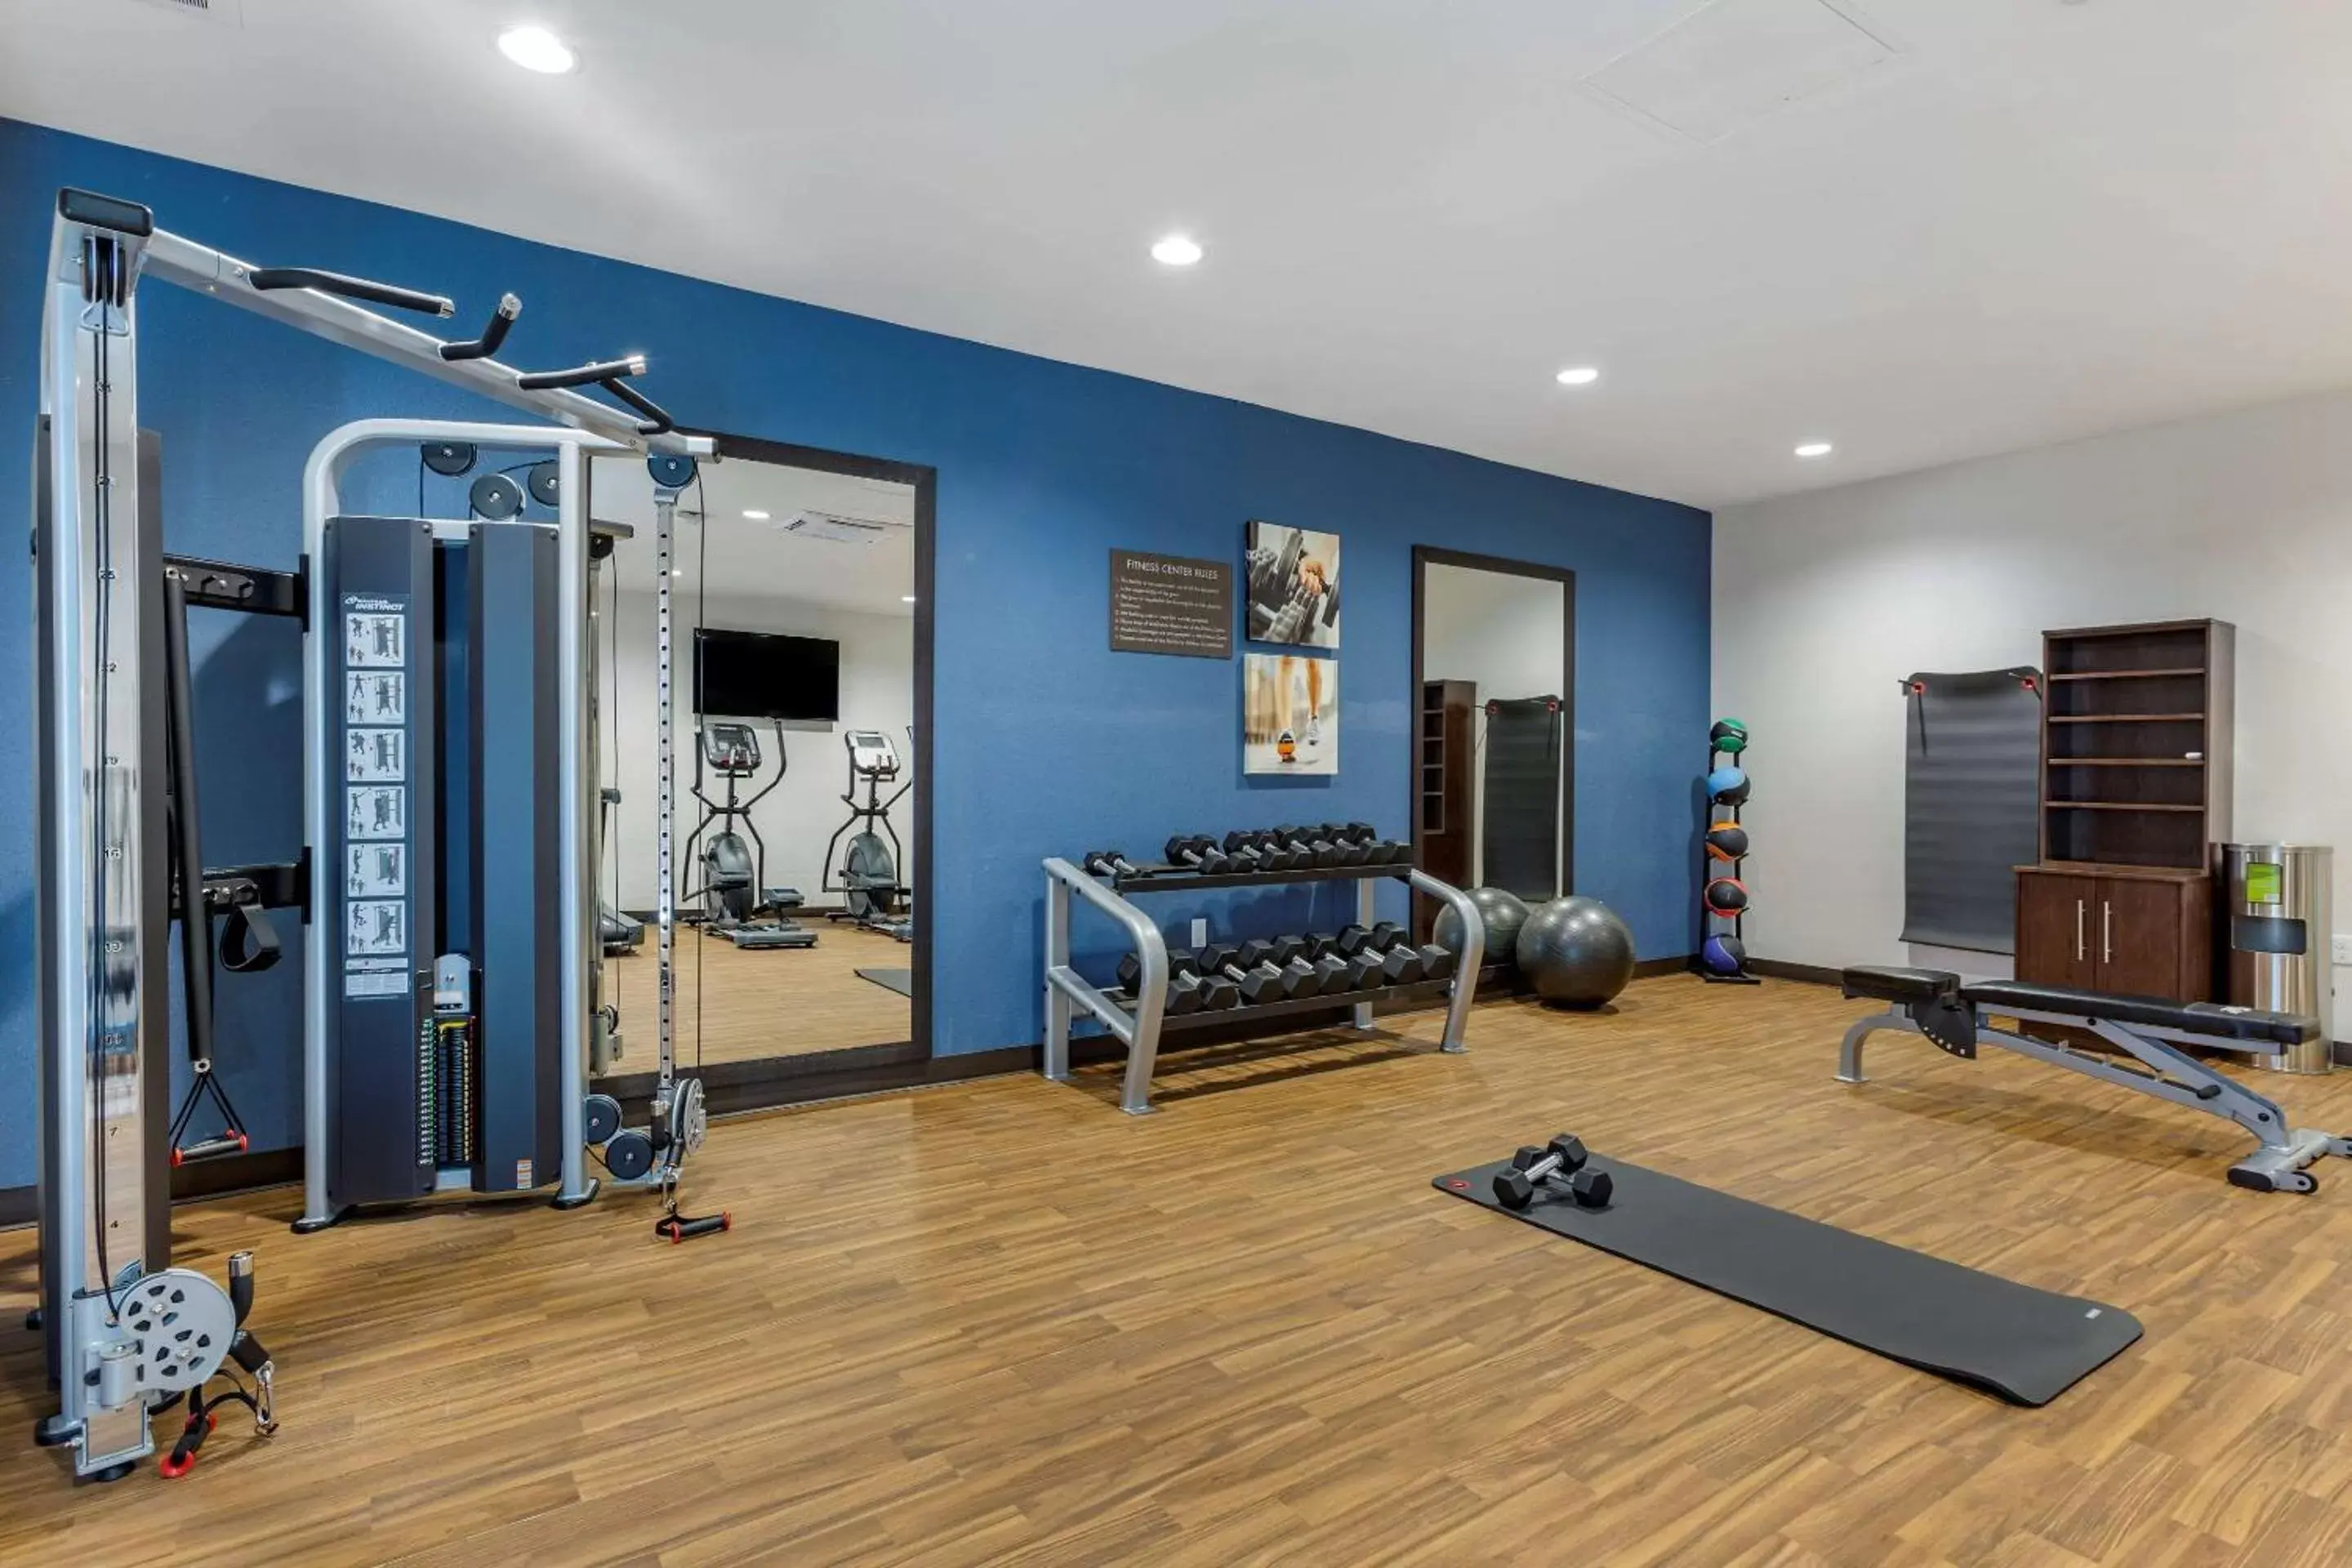 Fitness centre/facilities, Fitness Center/Facilities in Comfort Suites Albuquerque Airport